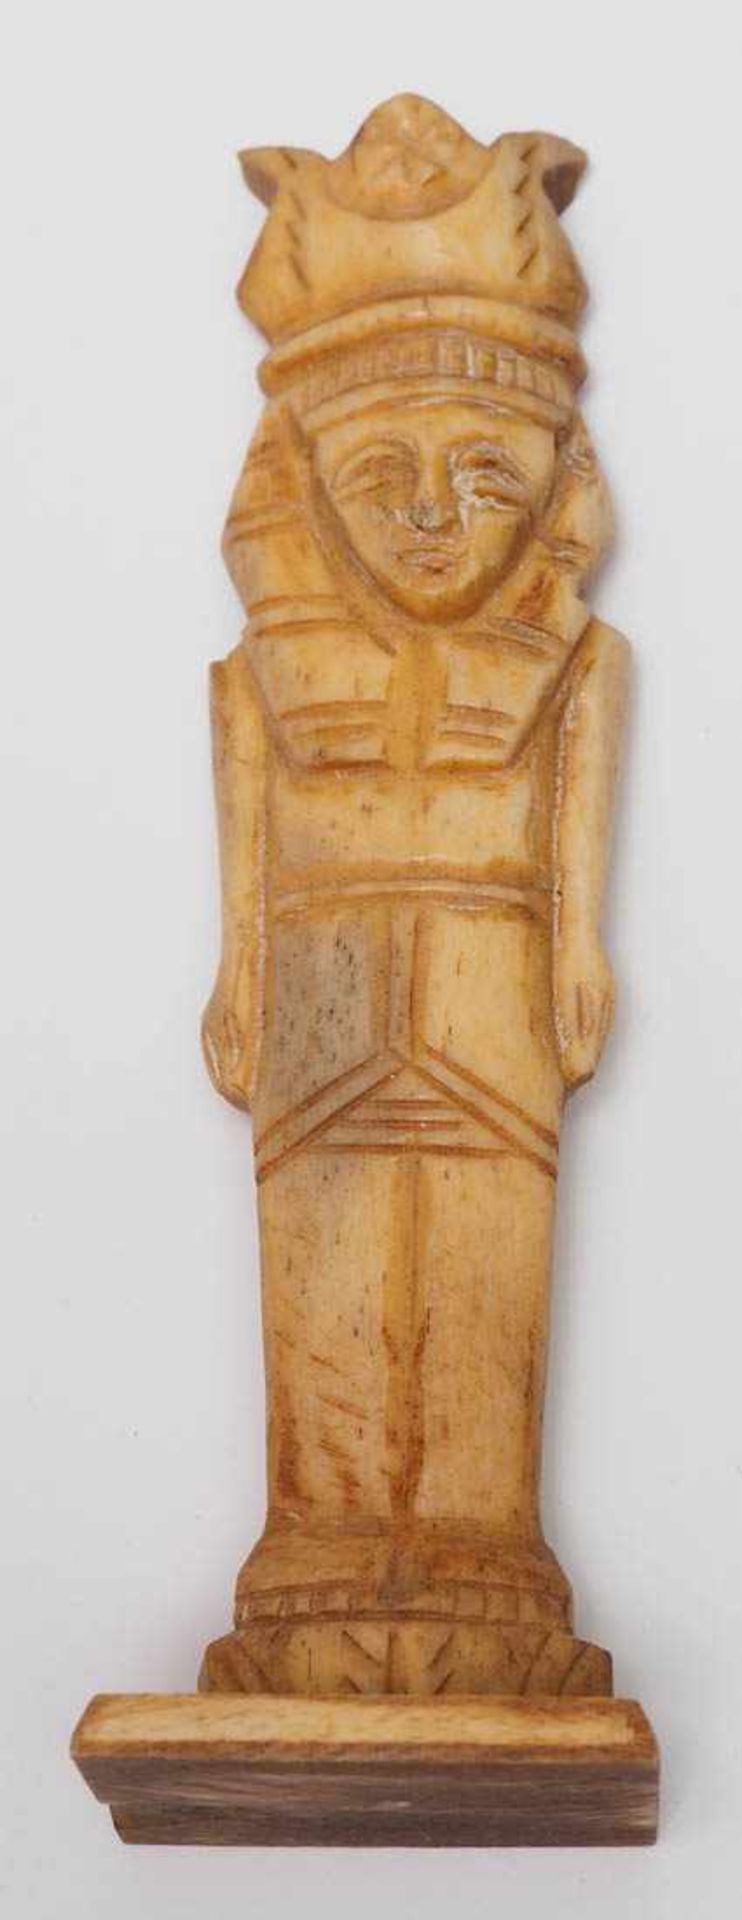 Schachspiel, Ägypten Figuren aus Bein. H. des Königs 15,5cm. Dazu intarsiertes Brett. - Image 10 of 10